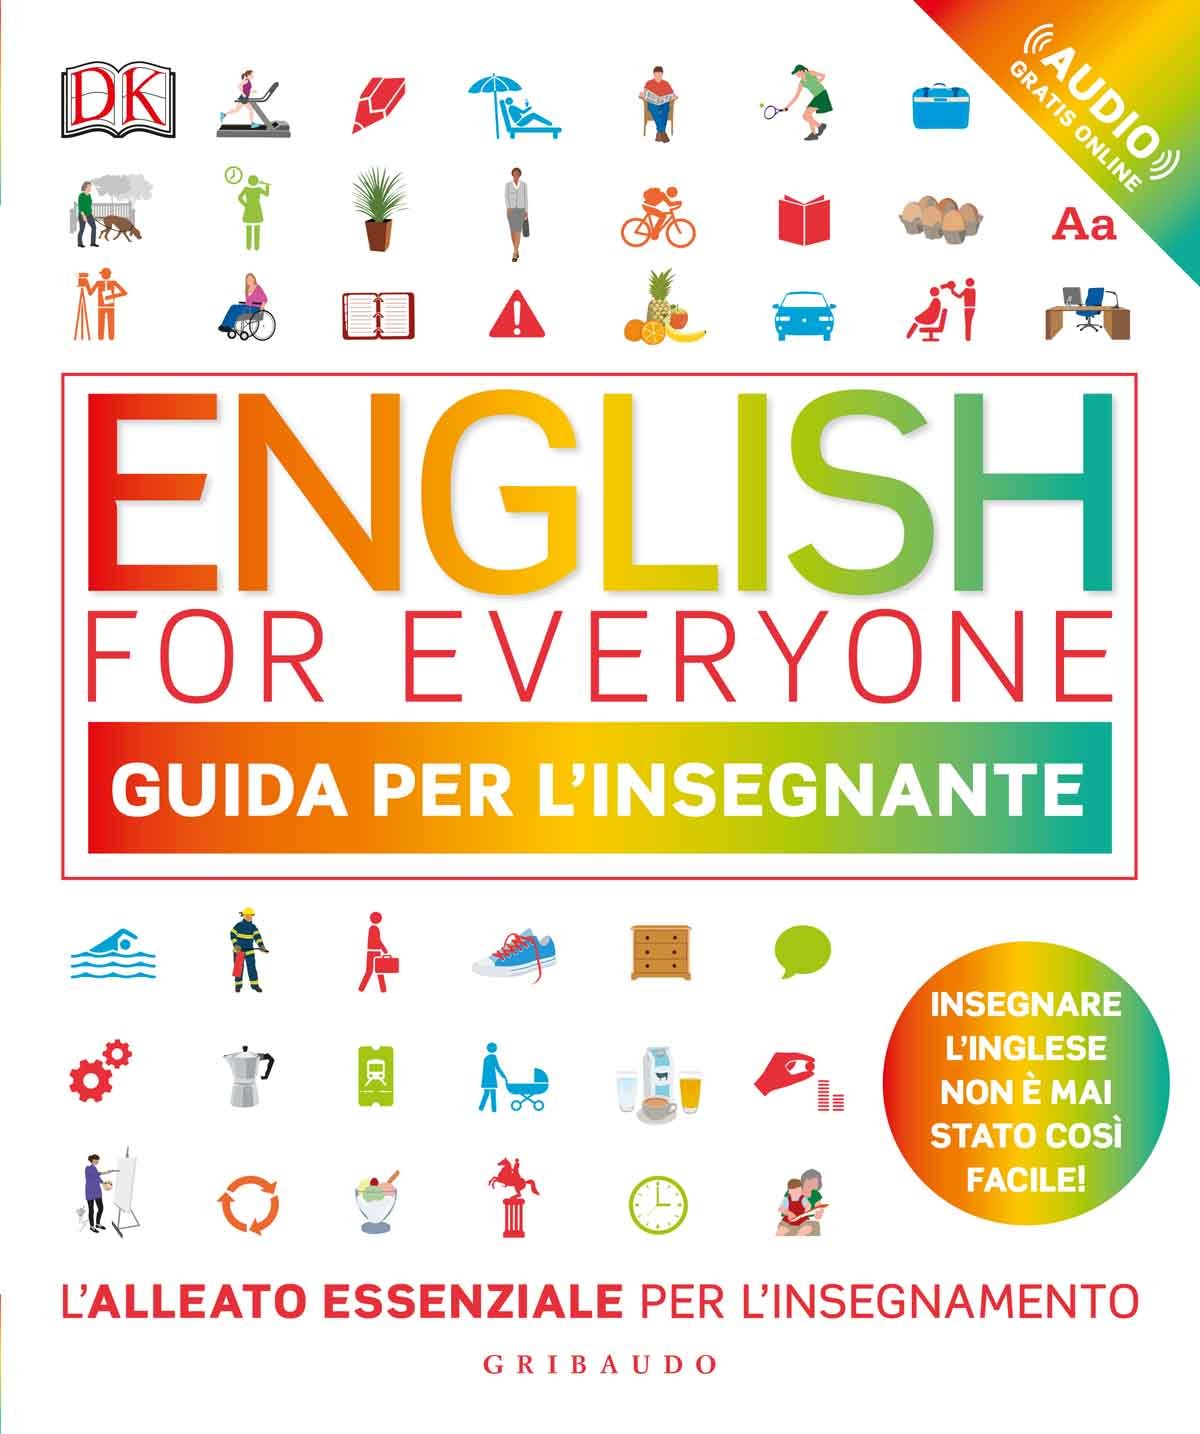 English for everyone - Guida per l'insegnante